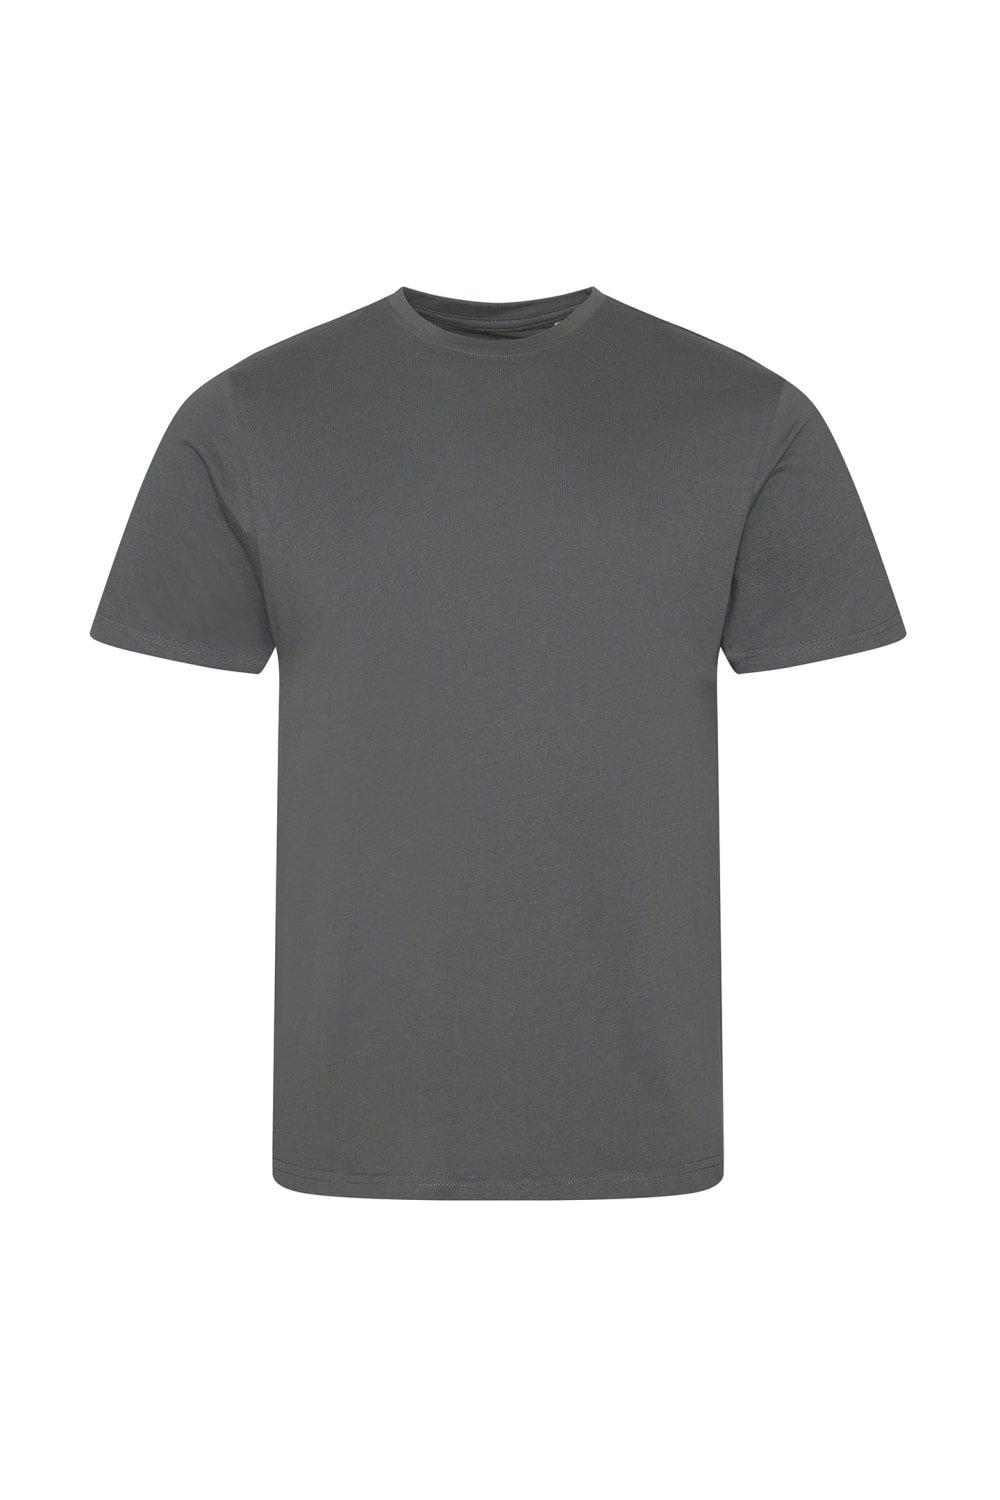 Каскадная футболка Ecologie, серый